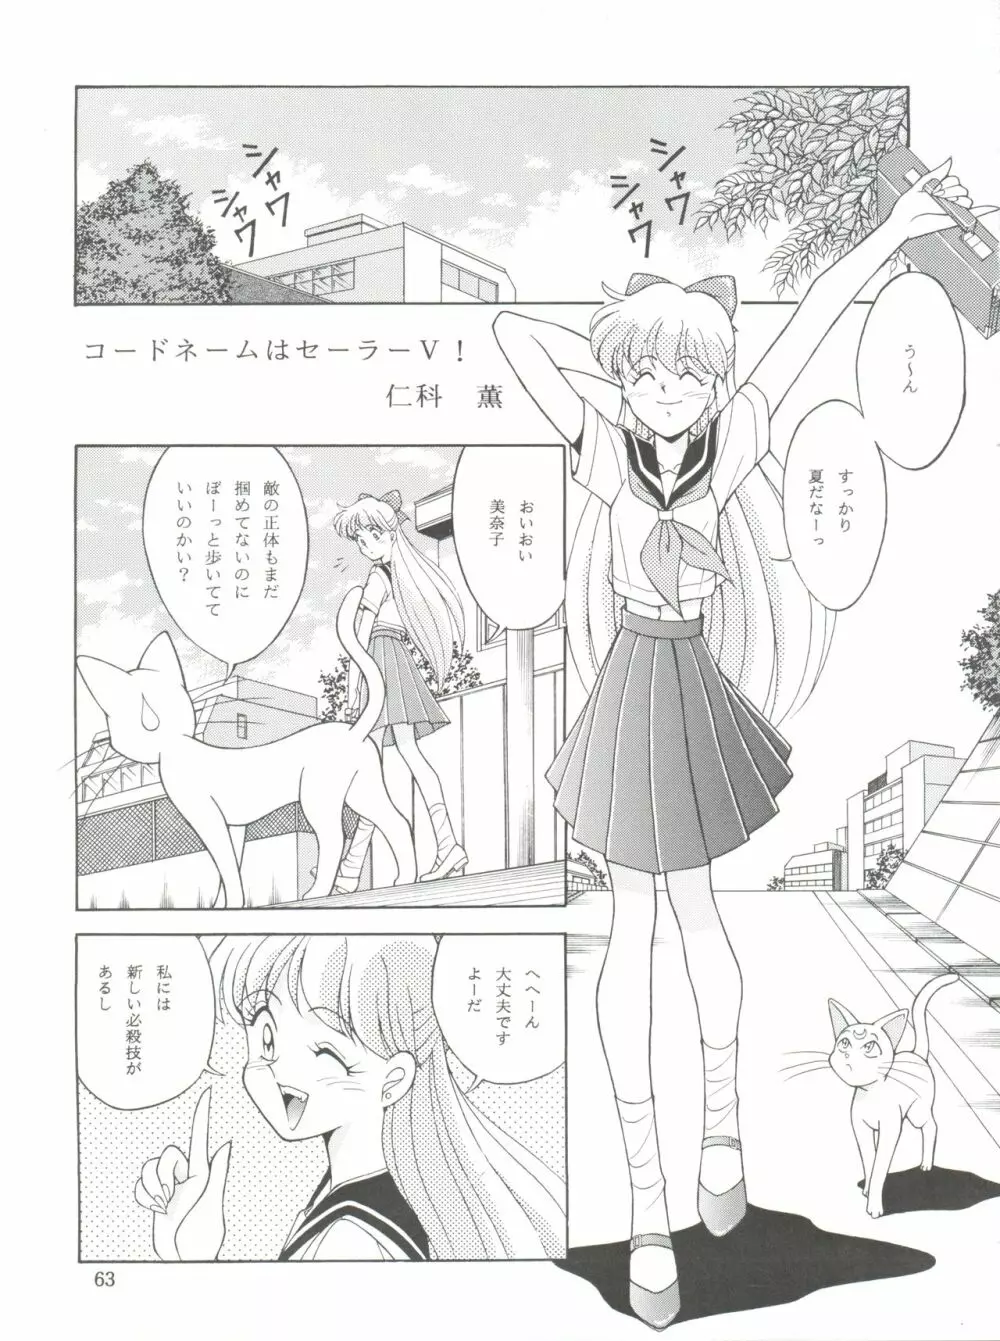 NANIWA-YA FINAL DRESS UP! - page63